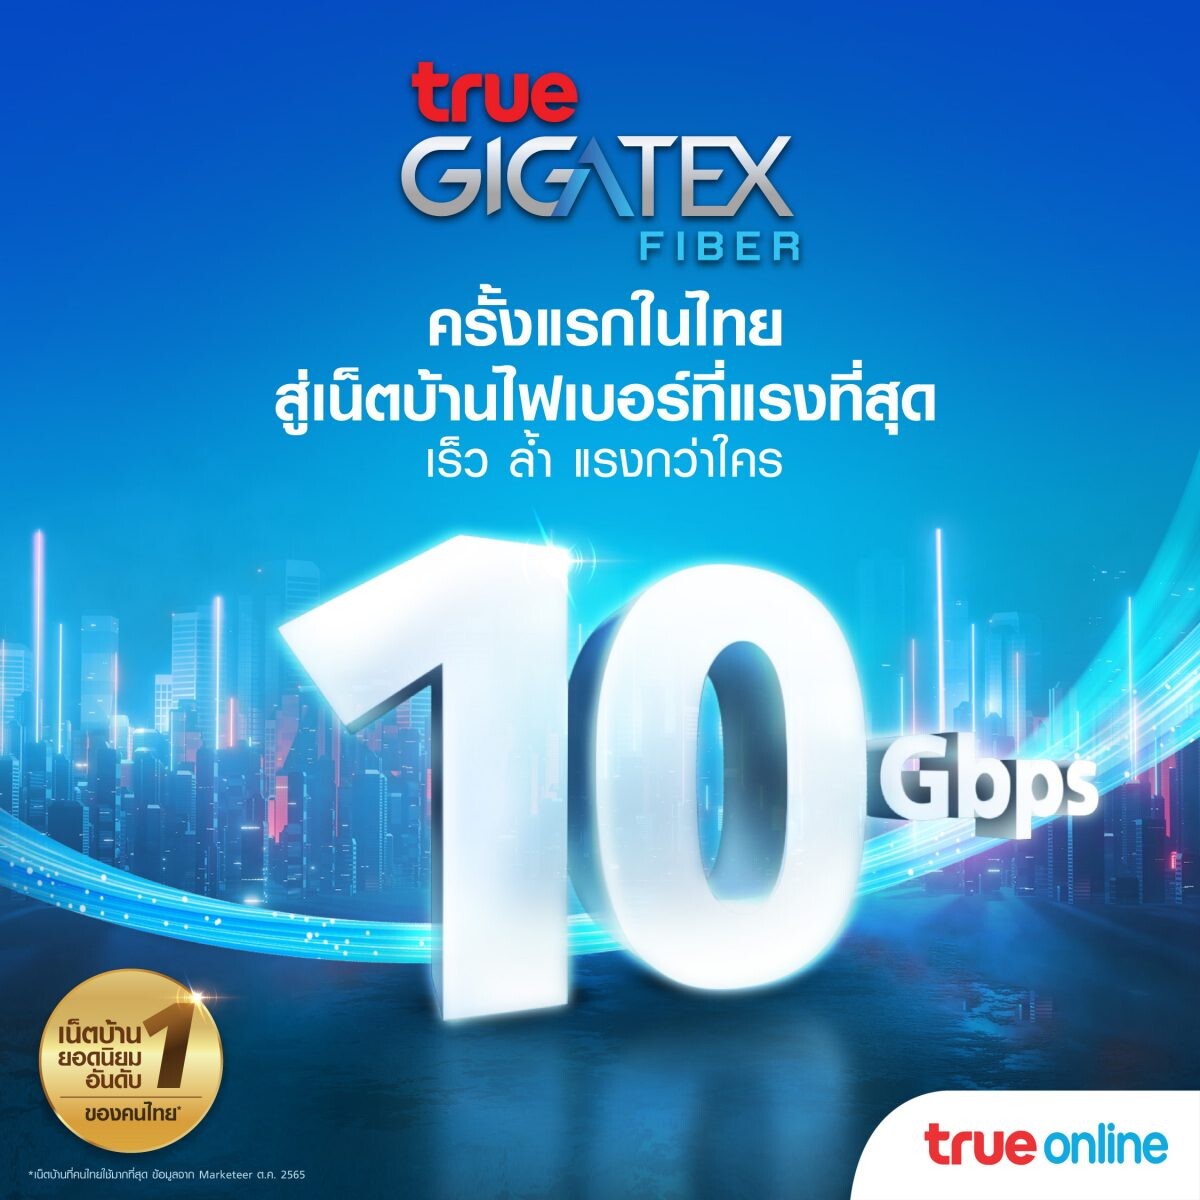 ทรูออนไลน์ สร้างปรากฏการณ์ใหม่เน็ตบ้านไฟเบอร์แรงสุด...10 Gbps ครั้งแรก  ในไทย ! นำร่องร่วมกับ แมกโนเลียส์ ราชดำริ บูเลอวาร์ด ส่งแพ็กเกจ True Gigatex Premium 10 Gbps.